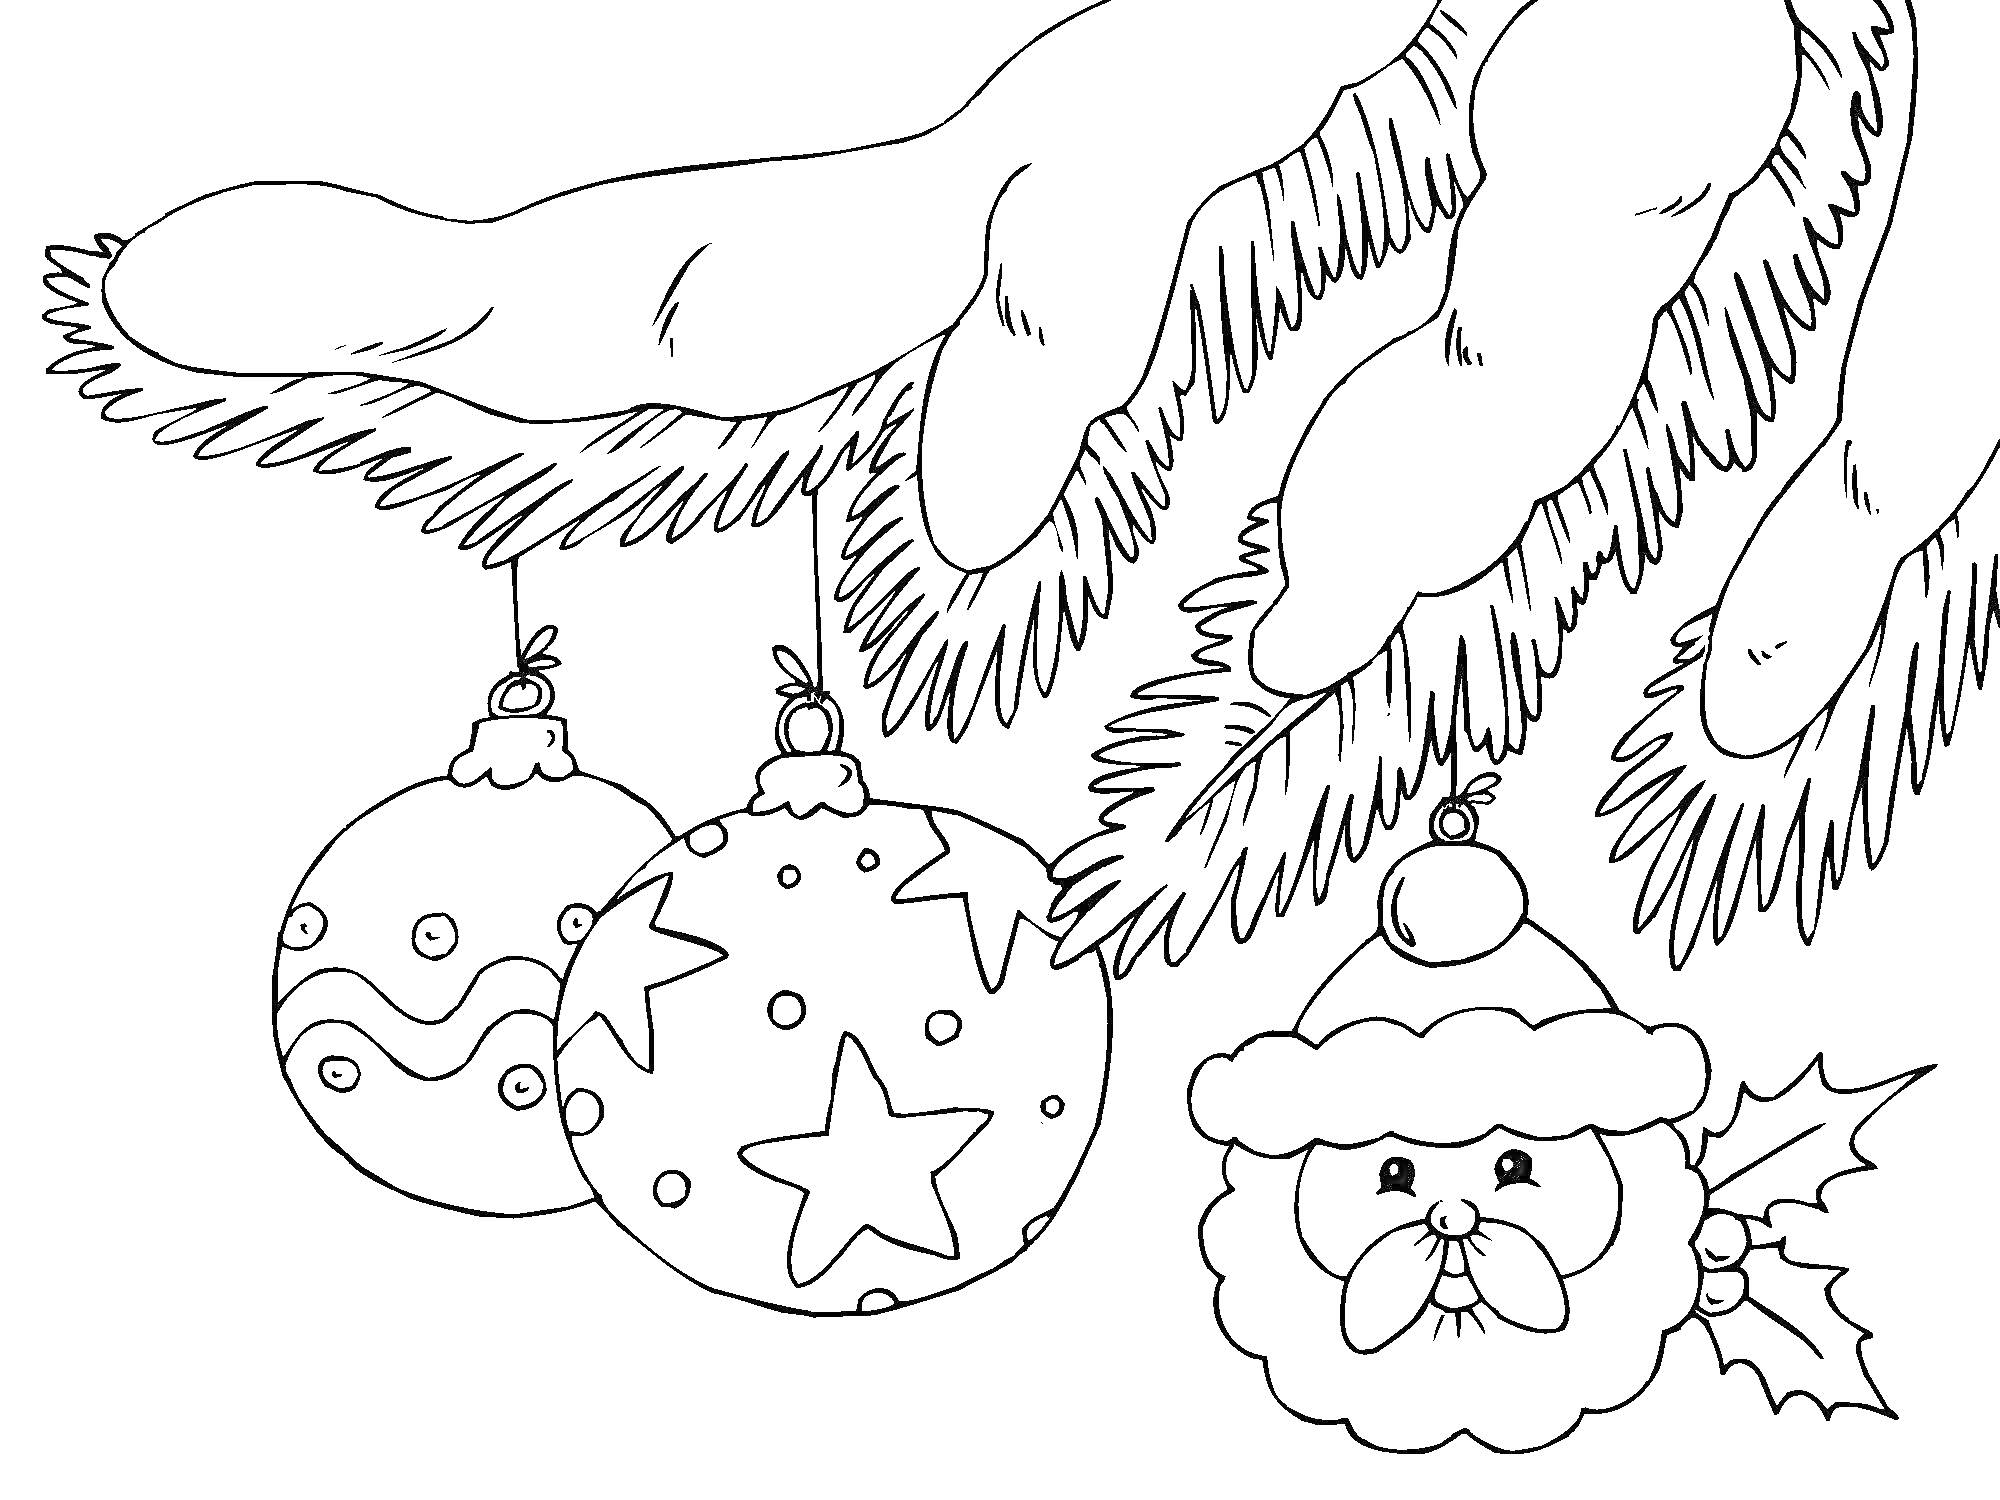 Раскраска Елочные игрушки на ветке елки - два шара с узорами и игрушка в виде лица Санта-Клауса